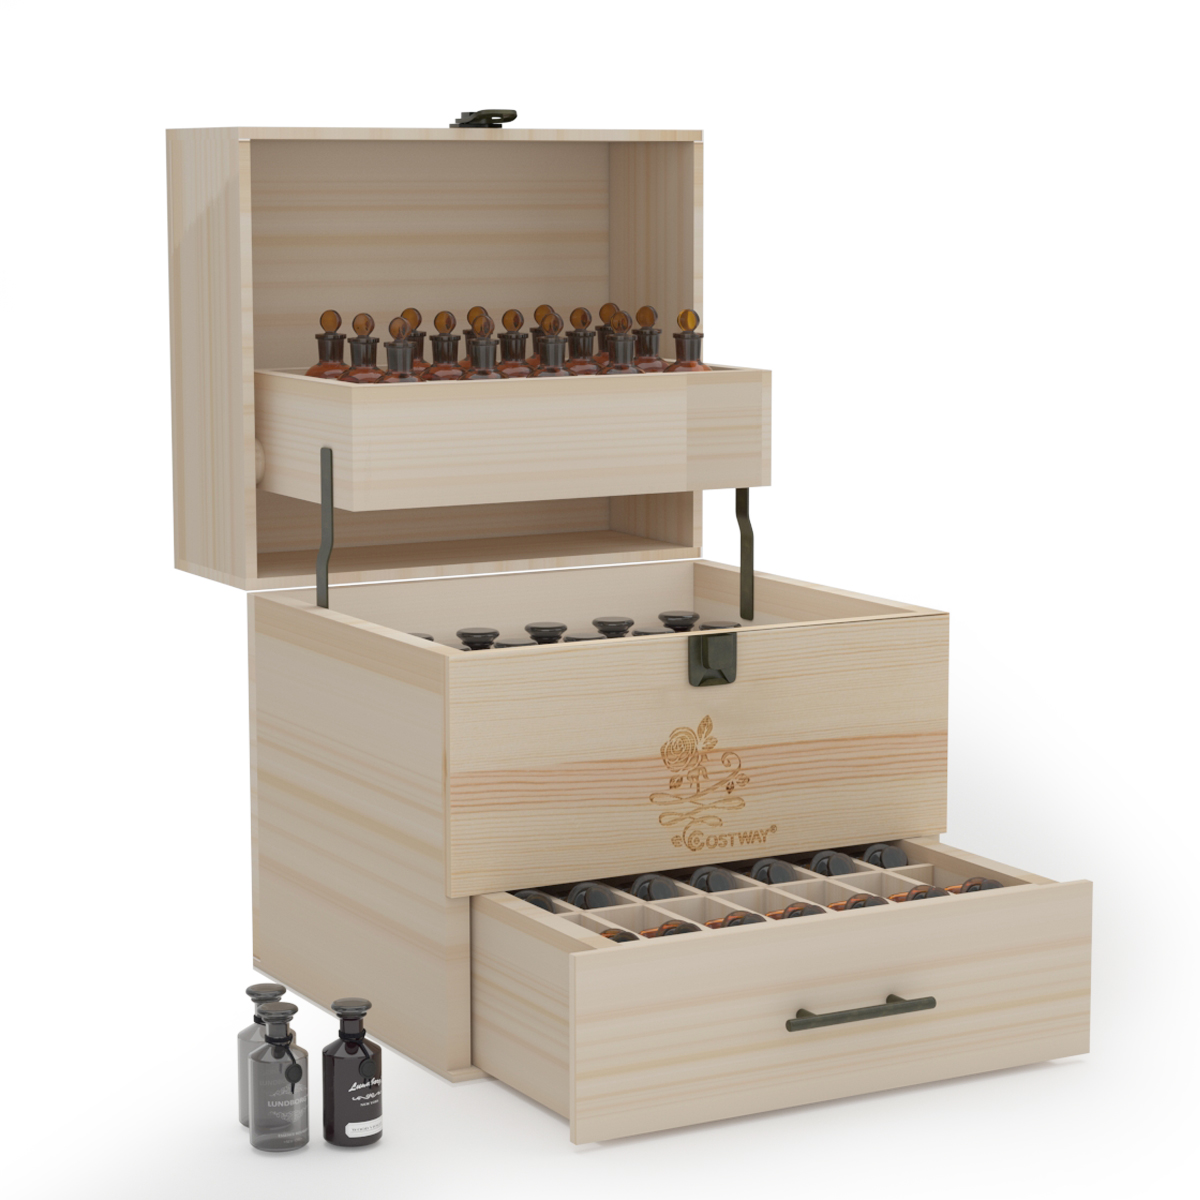 Costway Wooden Essential Oil Storage Box 3 Tier Oil Case Holder w